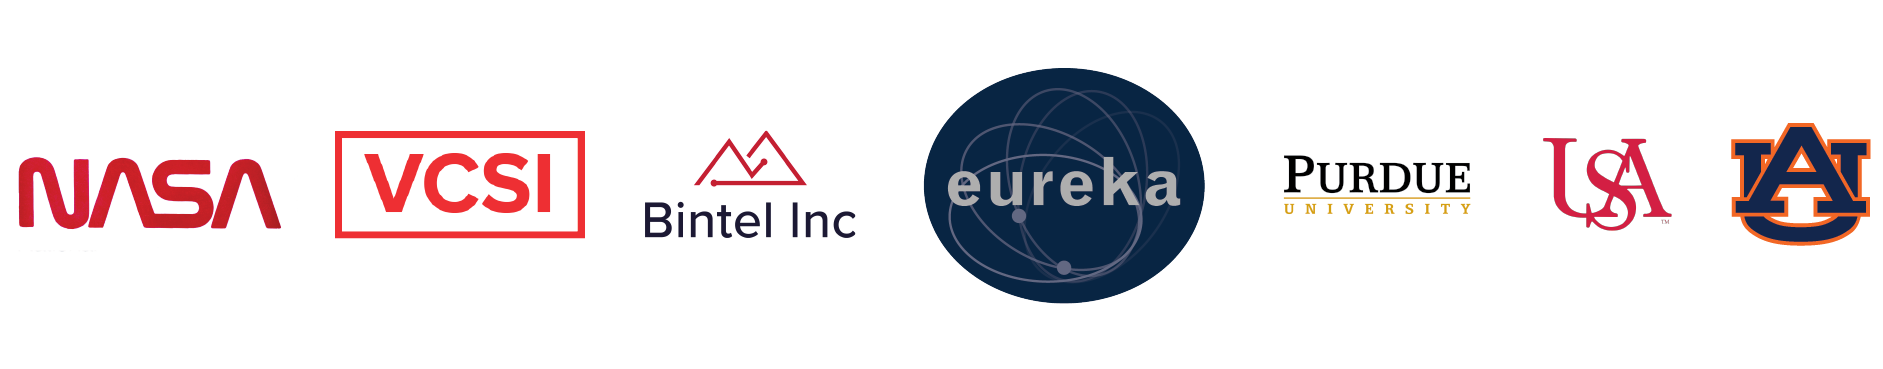 Eureka Project Logos